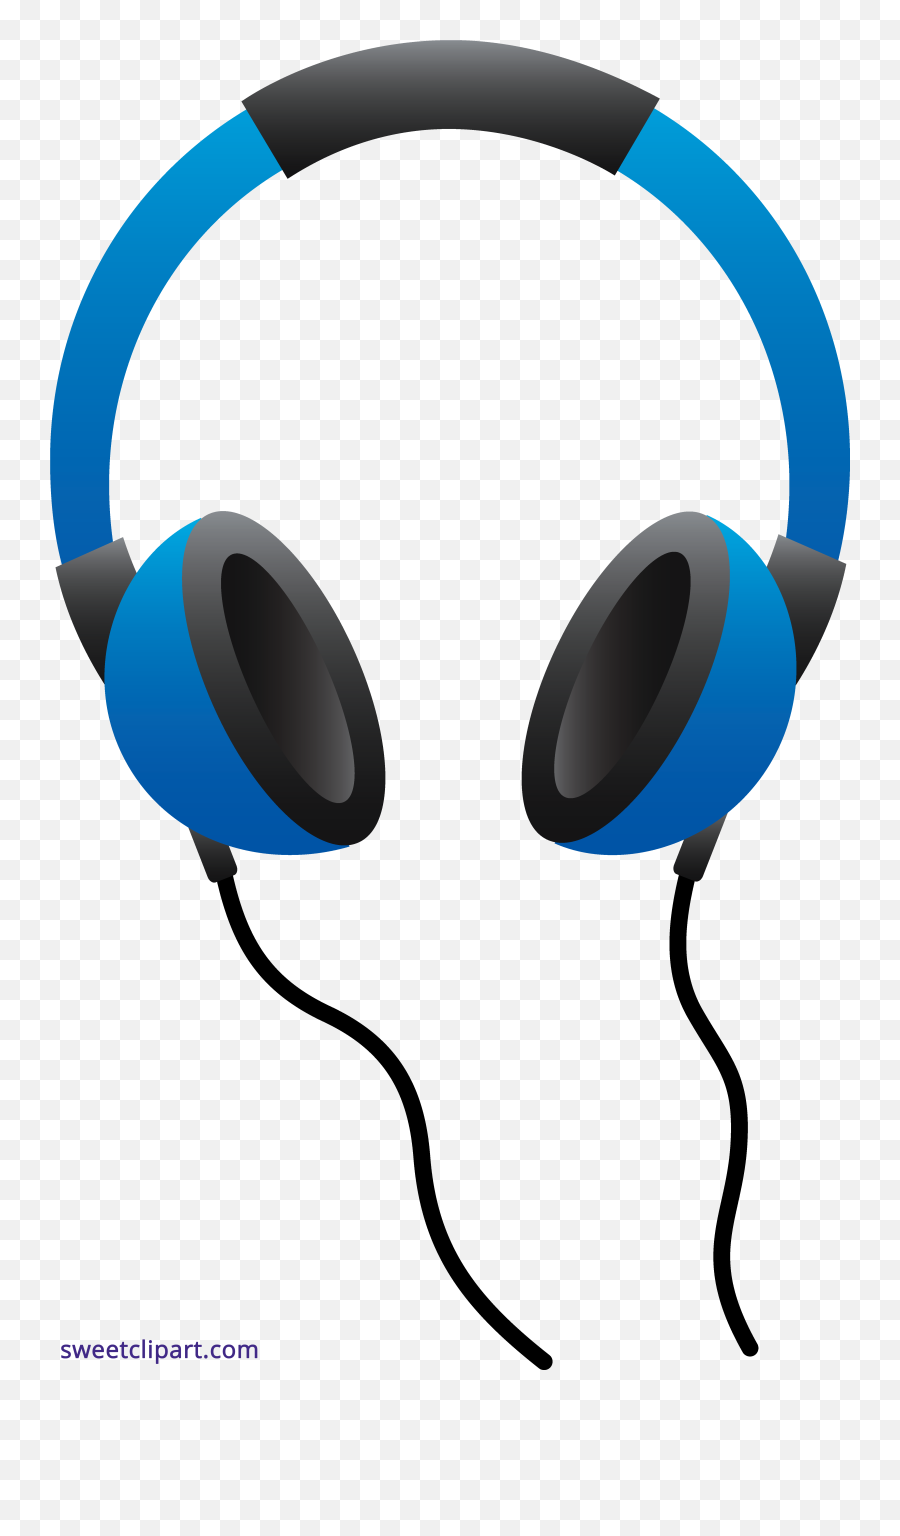 Images Of Headphones Clipart - Headphones Clipart Emoji,Emoji With Headphones